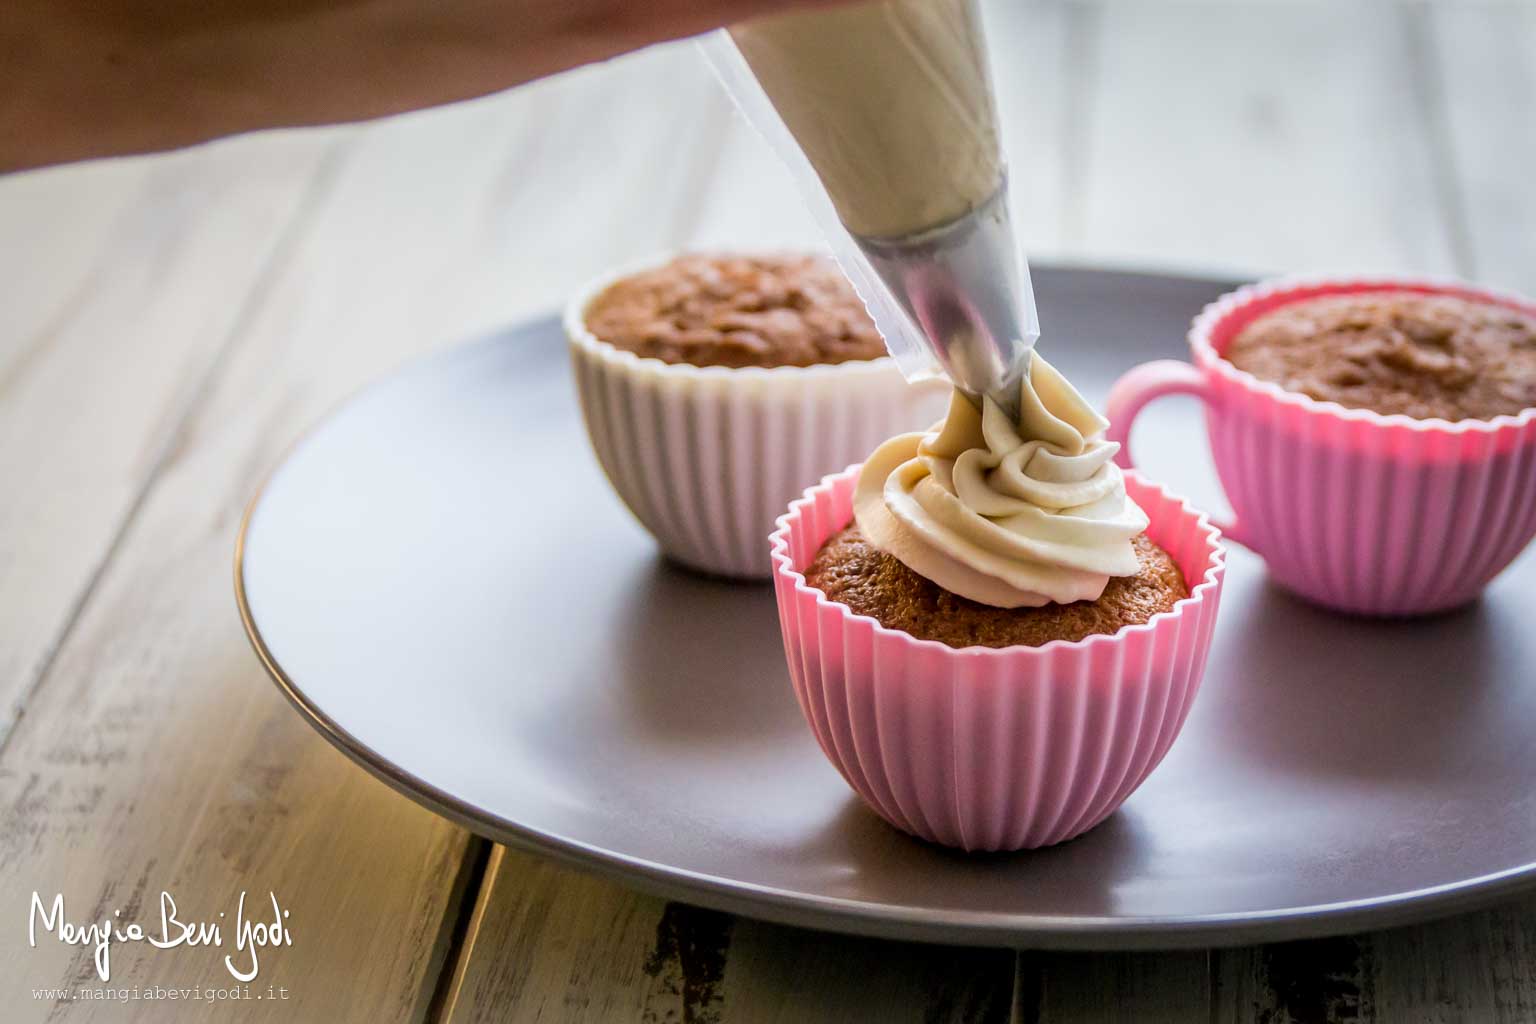 Decorare i cupcakes alla nutella con il frosting al caffè applicandolo con una tasca da pasticcere.